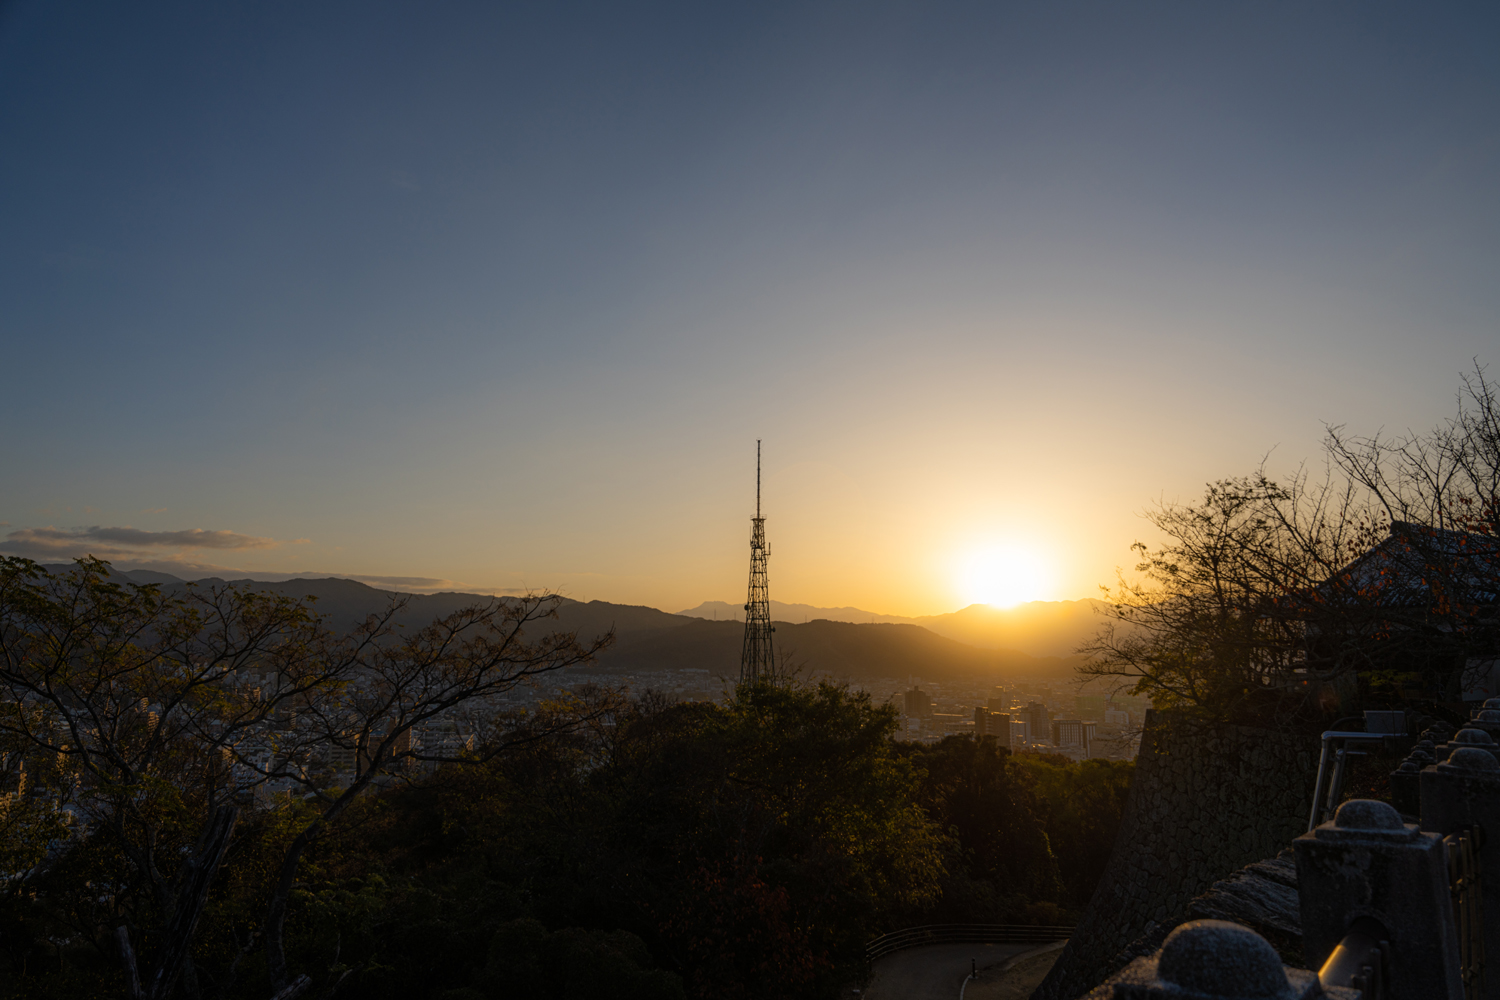 城山公園本丸広場で迎える朝日 / The sunrise at Shiroyama Park’s Honmaru Square